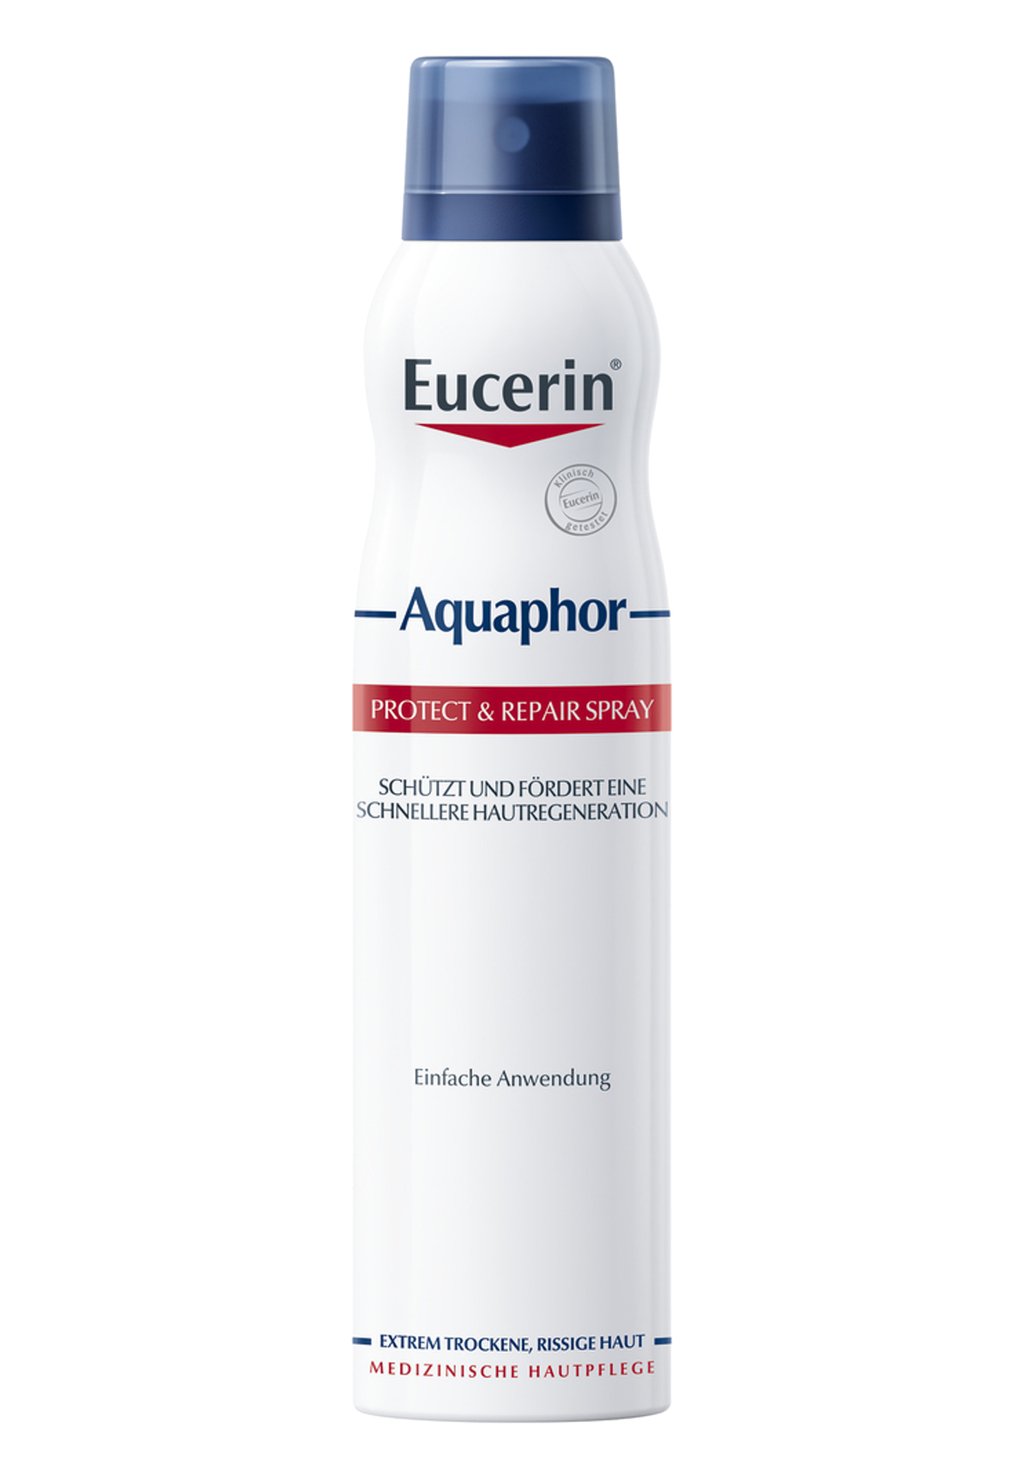 Увлажняющий крем AQUAPHOR PROTECT & REPAIR SPRAY Eucerin